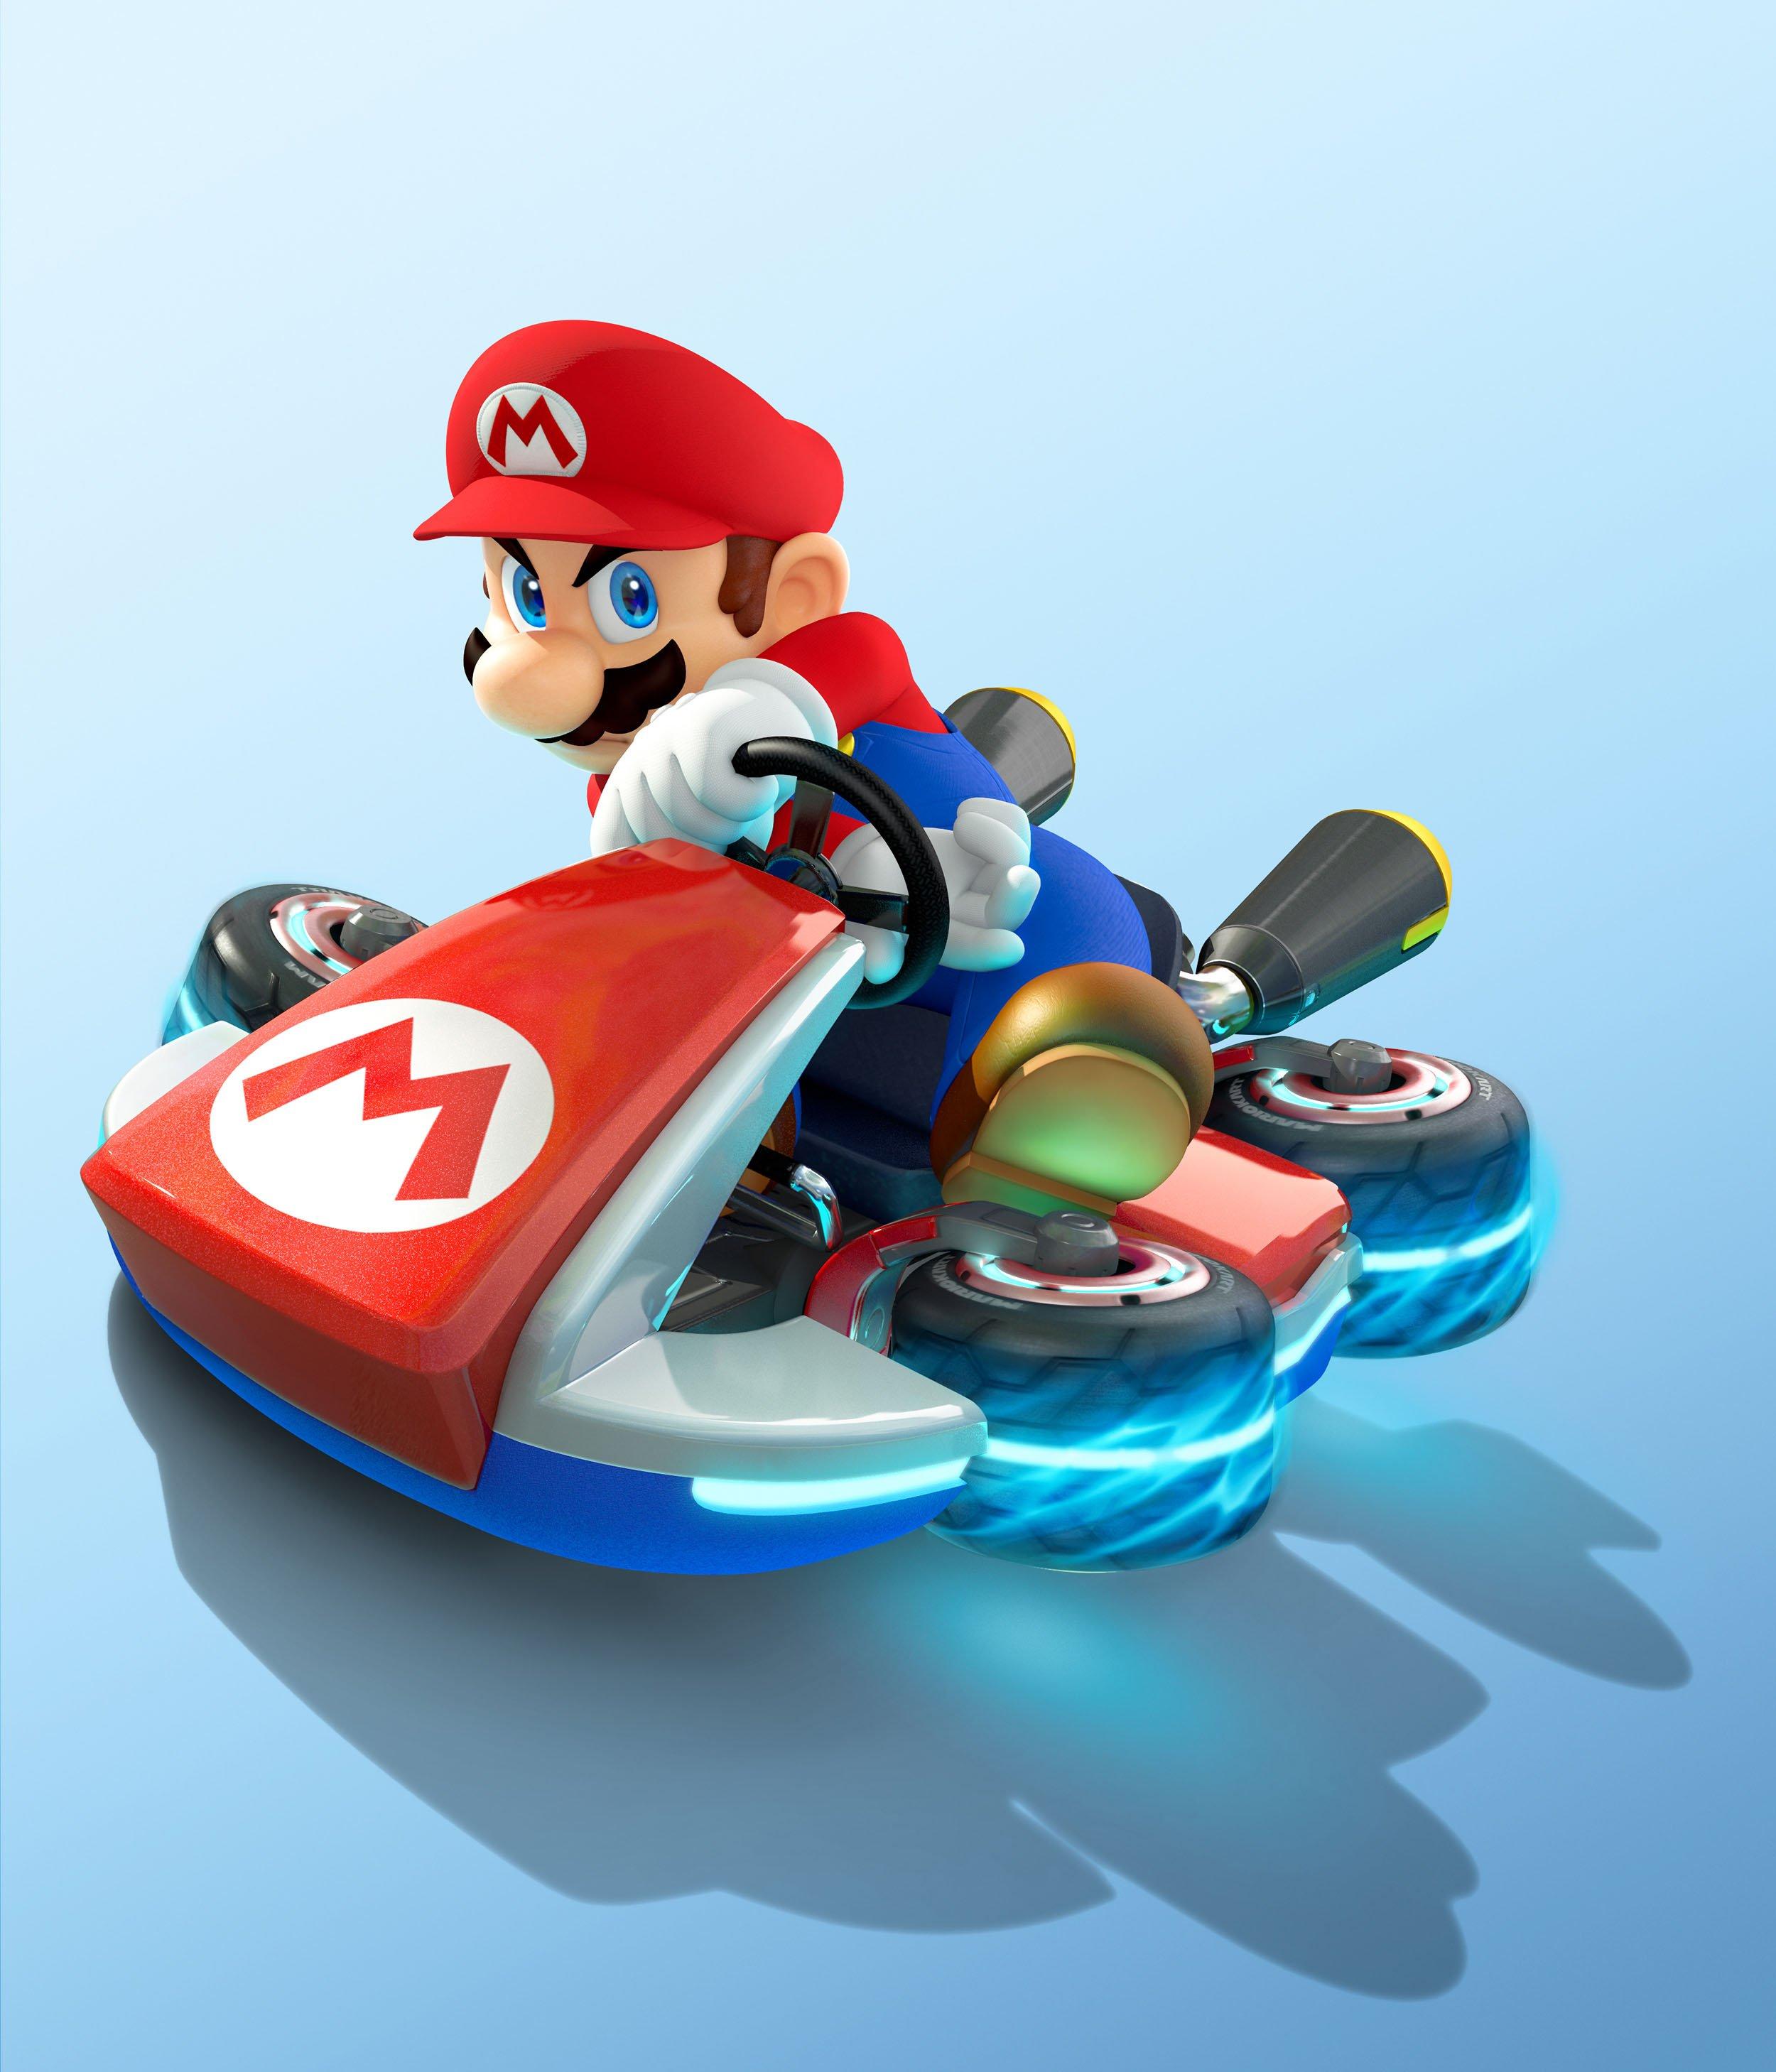 Mario Kart 8 Deluxe Nintendo Switch 1703